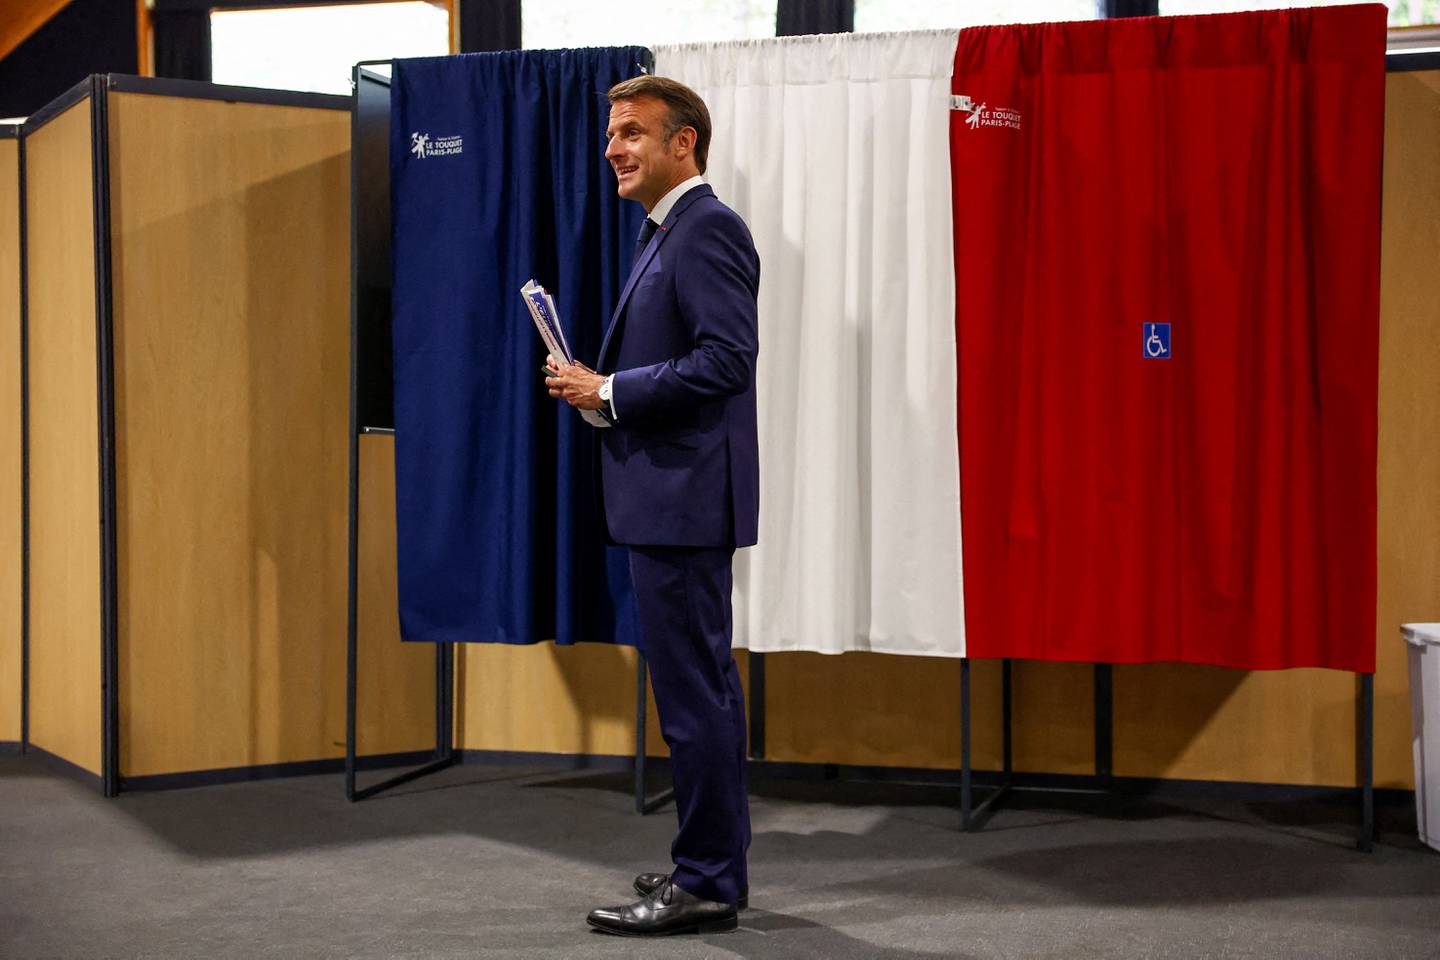 El presidente de Francia, Emmanuel Macron, se encuentra frente a una cabina electoral, adornada con cortinas que muestran los colores de la bandera de Francia, antes de emitir su voto para las elecciones al Parlamento Europeo.